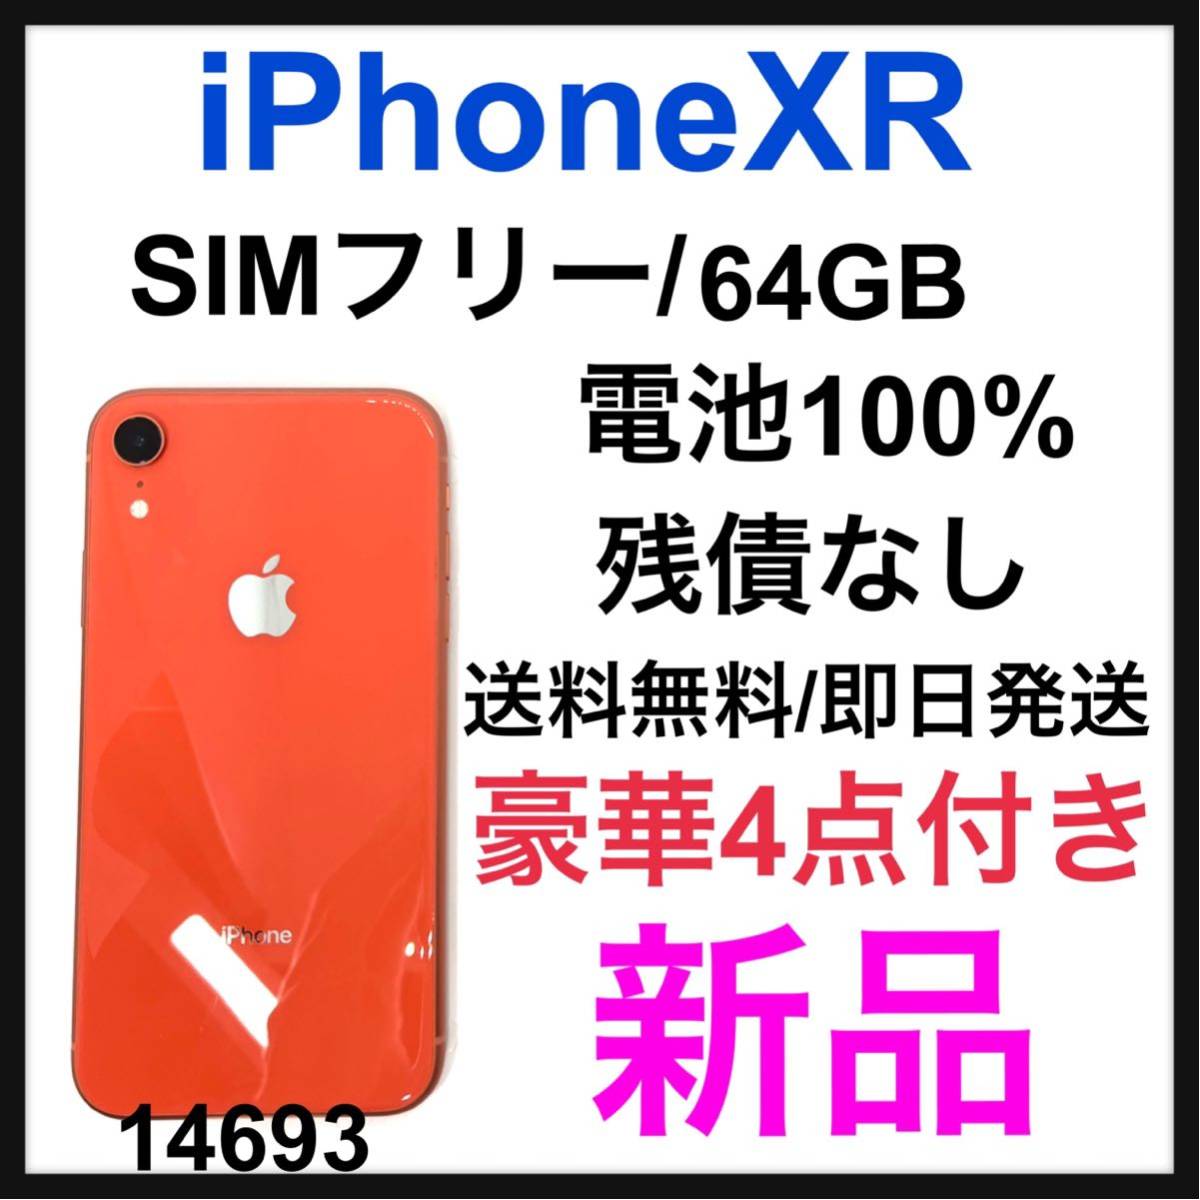 最新最全の iPhone XR Coral 64 GB SIMフリー 新品ケース付 econet.bi